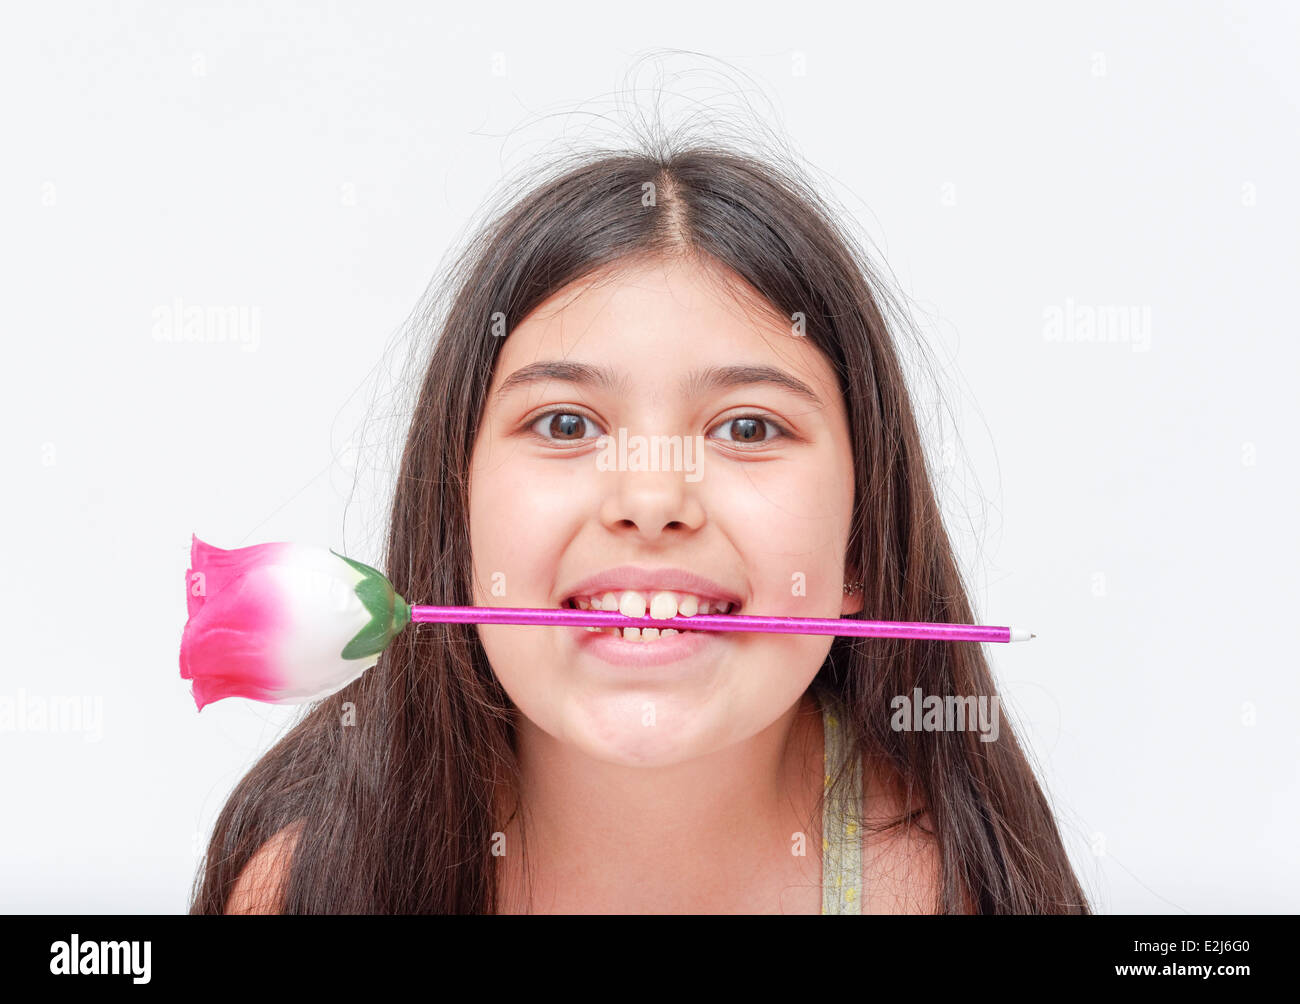 fröhliches junges Mädchen von 9 mit einer Blume im Mund Model release verfügbar Stockfoto